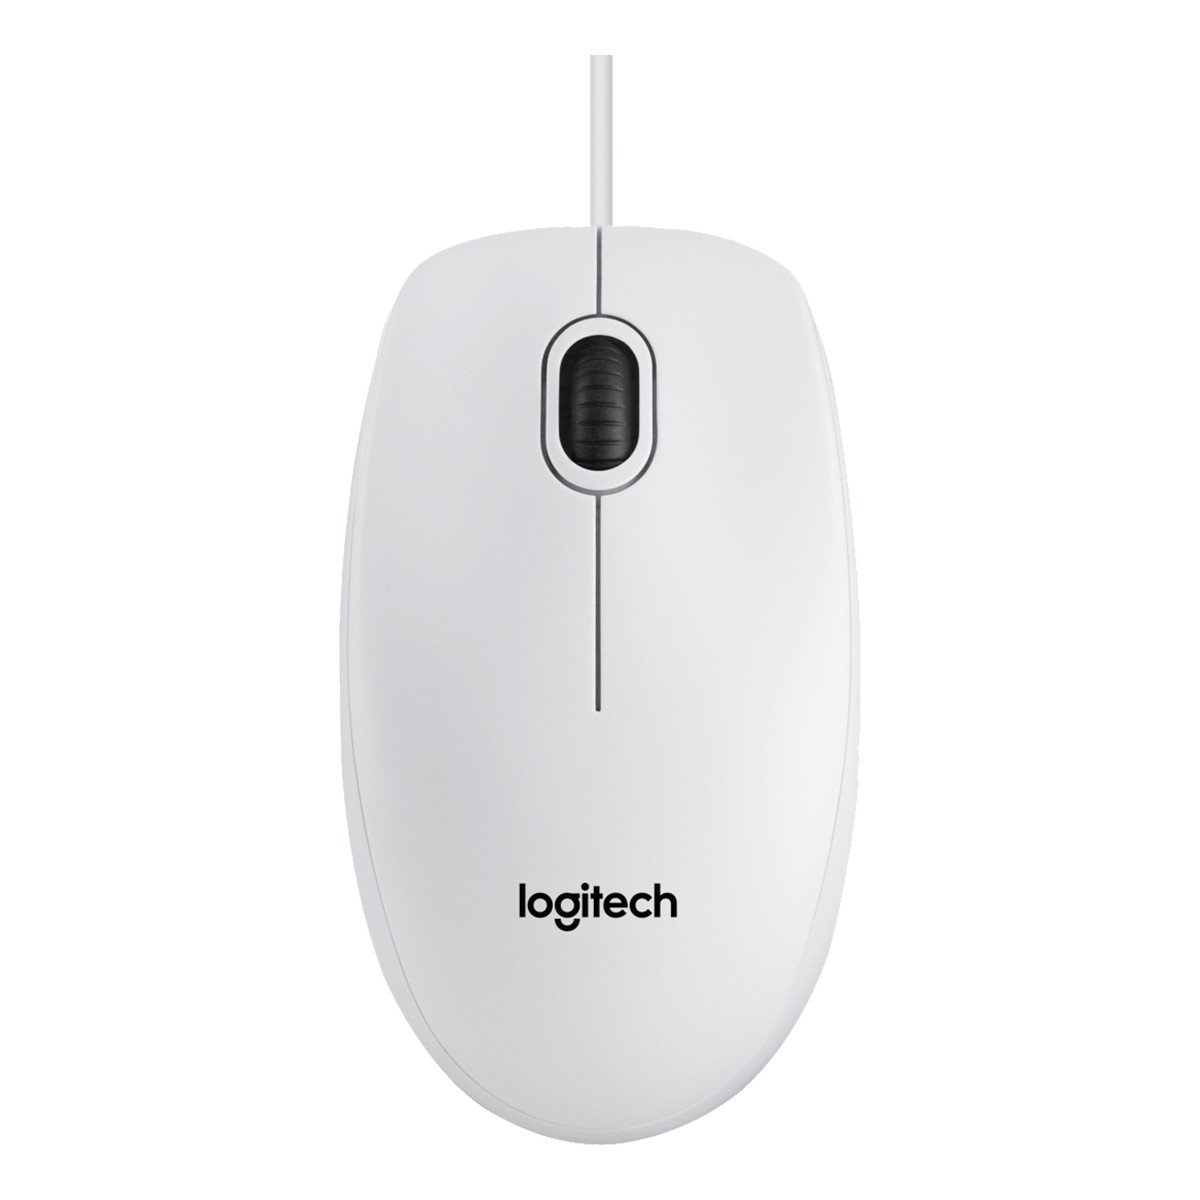 Logitech B100 optisk kabelansluten mus, vit